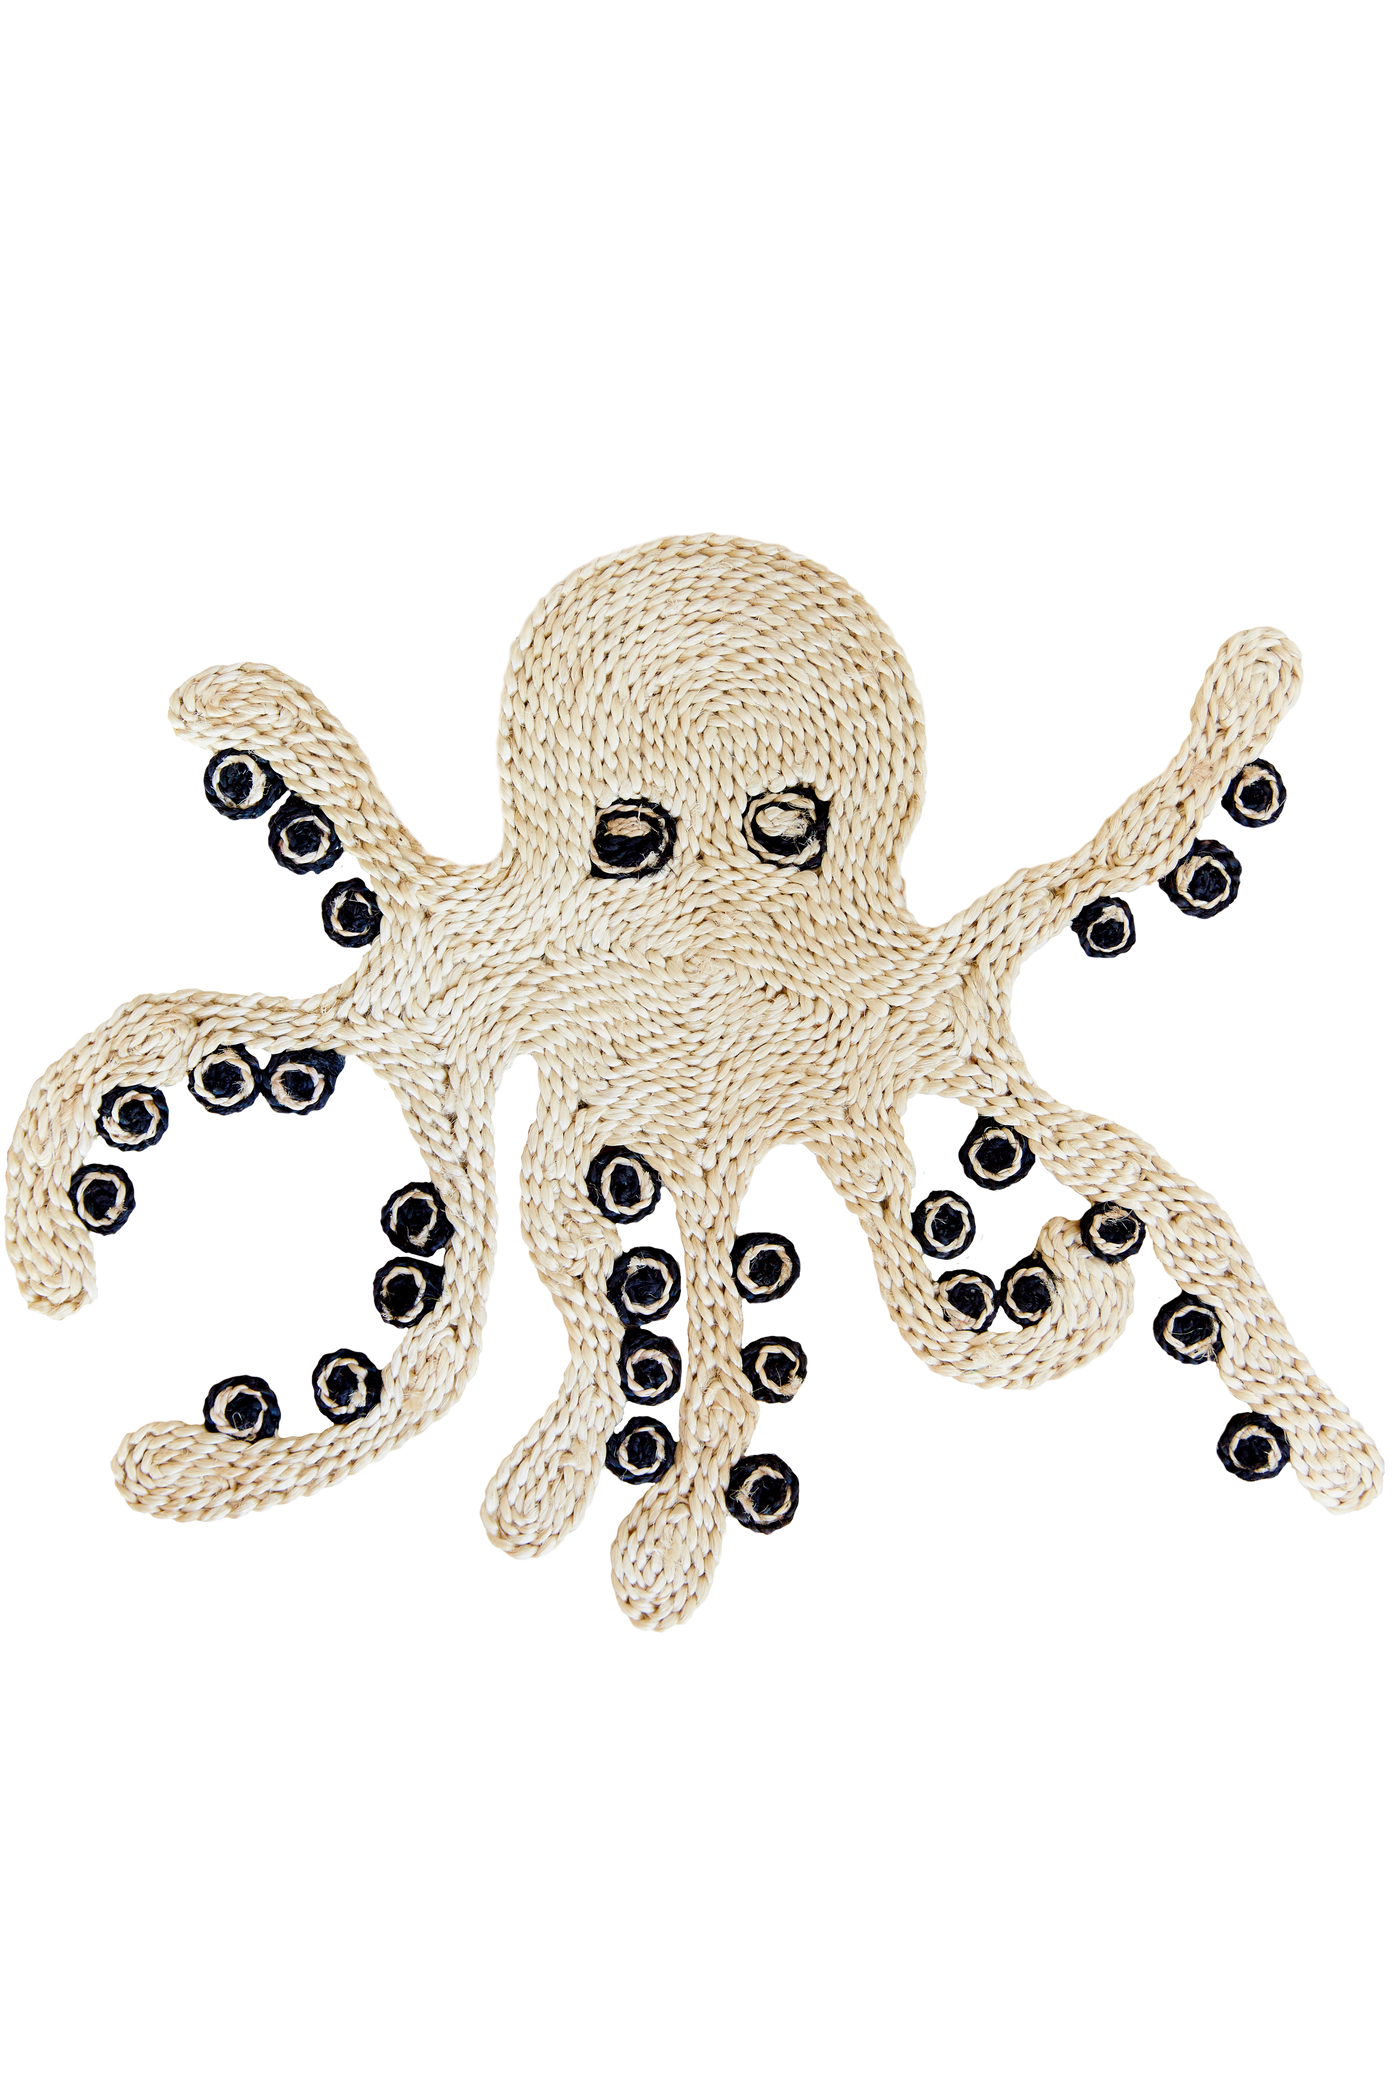 Octopus Placemat - Natural